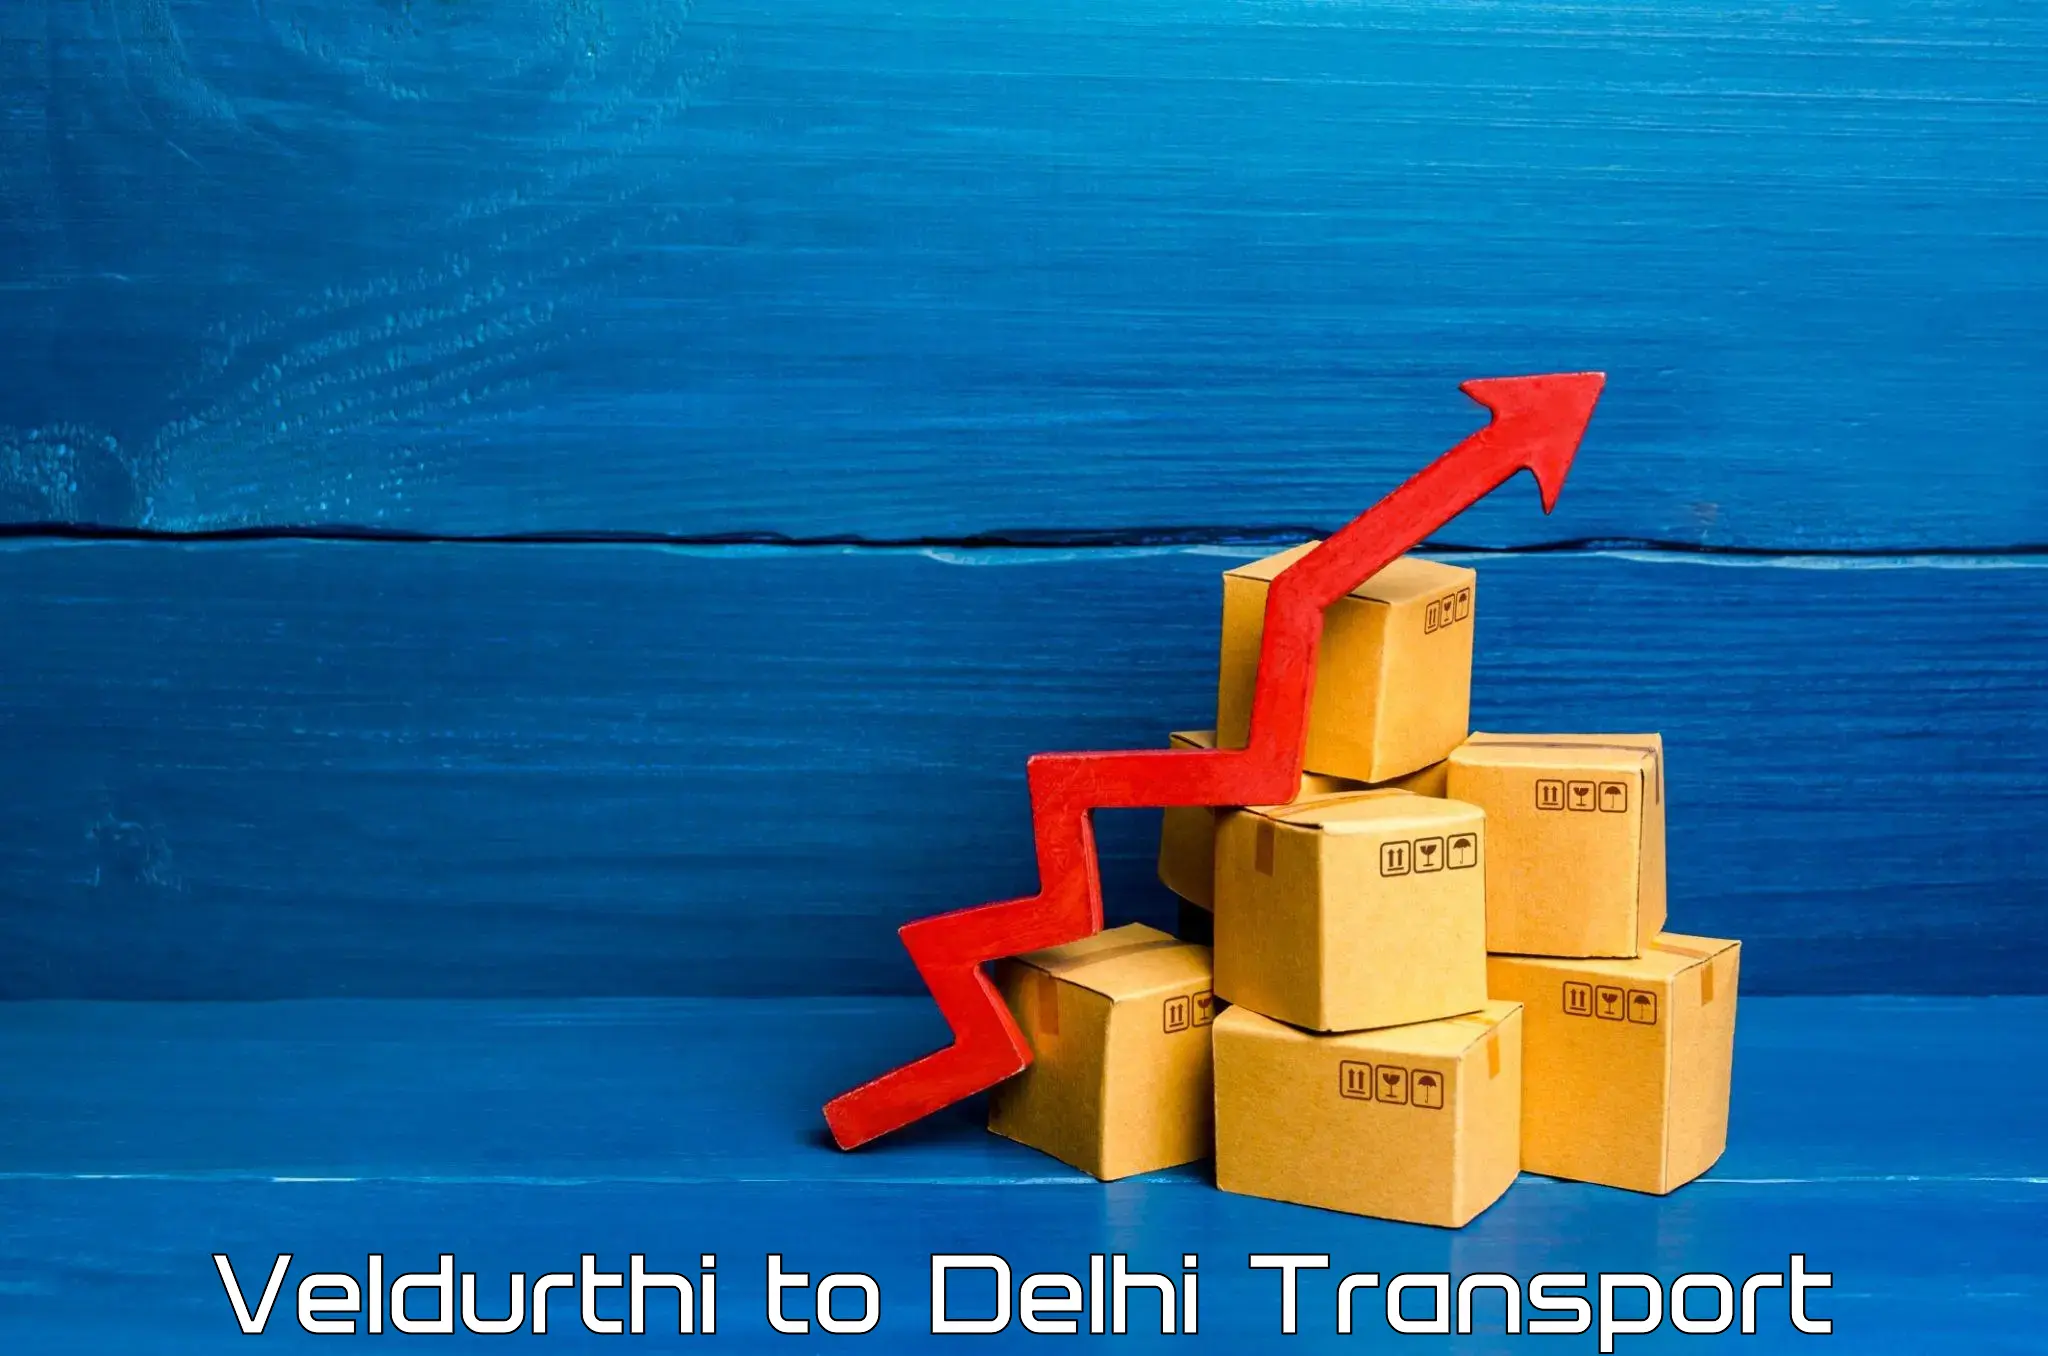 Transport services Veldurthi to Delhi